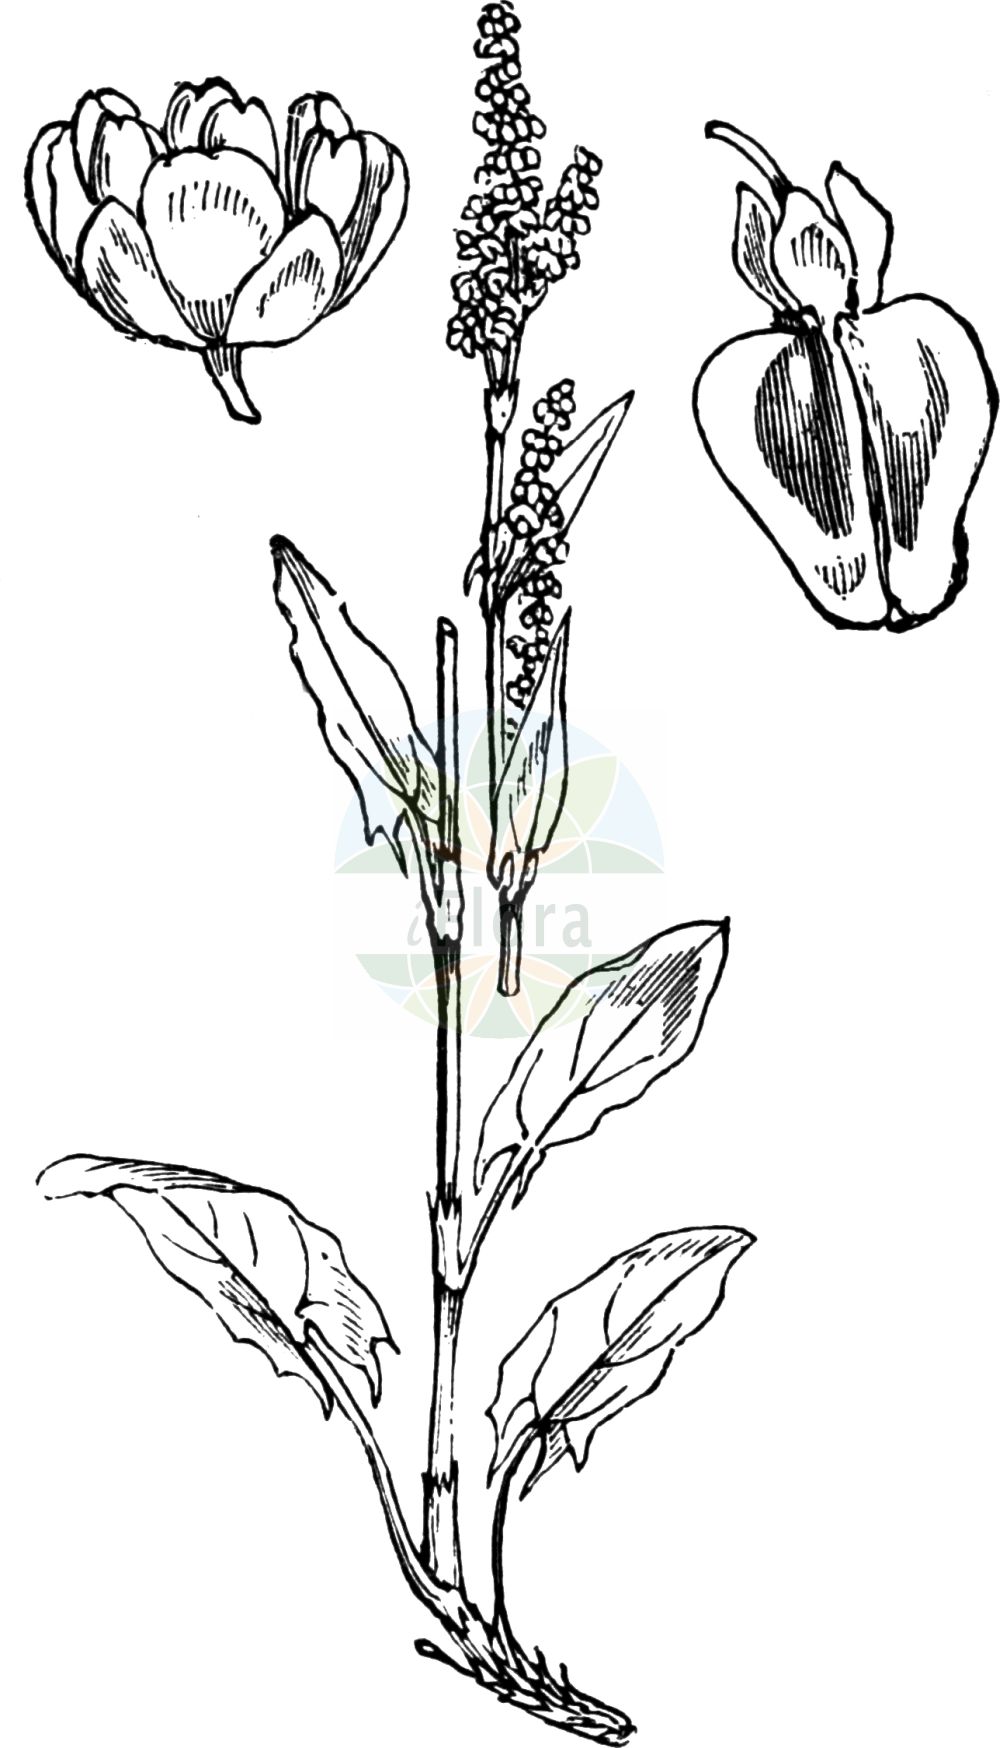 Historische Abbildung von Rumex acetosa (Großer Sauerampfer - Common Sorrel). Das Bild zeigt Blatt, Bluete, Frucht und Same. ---- Historical Drawing of Rumex acetosa (Großer Sauerampfer - Common Sorrel). The image is showing leaf, flower, fruit and seed.(Rumex acetosa,Großer Sauerampfer,Common Sorrel,Acetosa pratensis,Rumex acetosa,Rumex acetosa subsp. planellae,Grosser Sauerampfer,Gewoehnlicher Sauerampfer,Wiesen-Sauerampfer,Common Sorrel,Garden Sorrel,Green Sorrel,Sheep's Sorrel,Meadow Sorrel,Sour Dock,Rumex,Ampfer,Sorrel,Polygonaceae,Knöterichgewächse,Knotgrass family,Blatt,Bluete,Frucht,Same,leaf,flower,fruit,seed,Fitch et al. (1880))